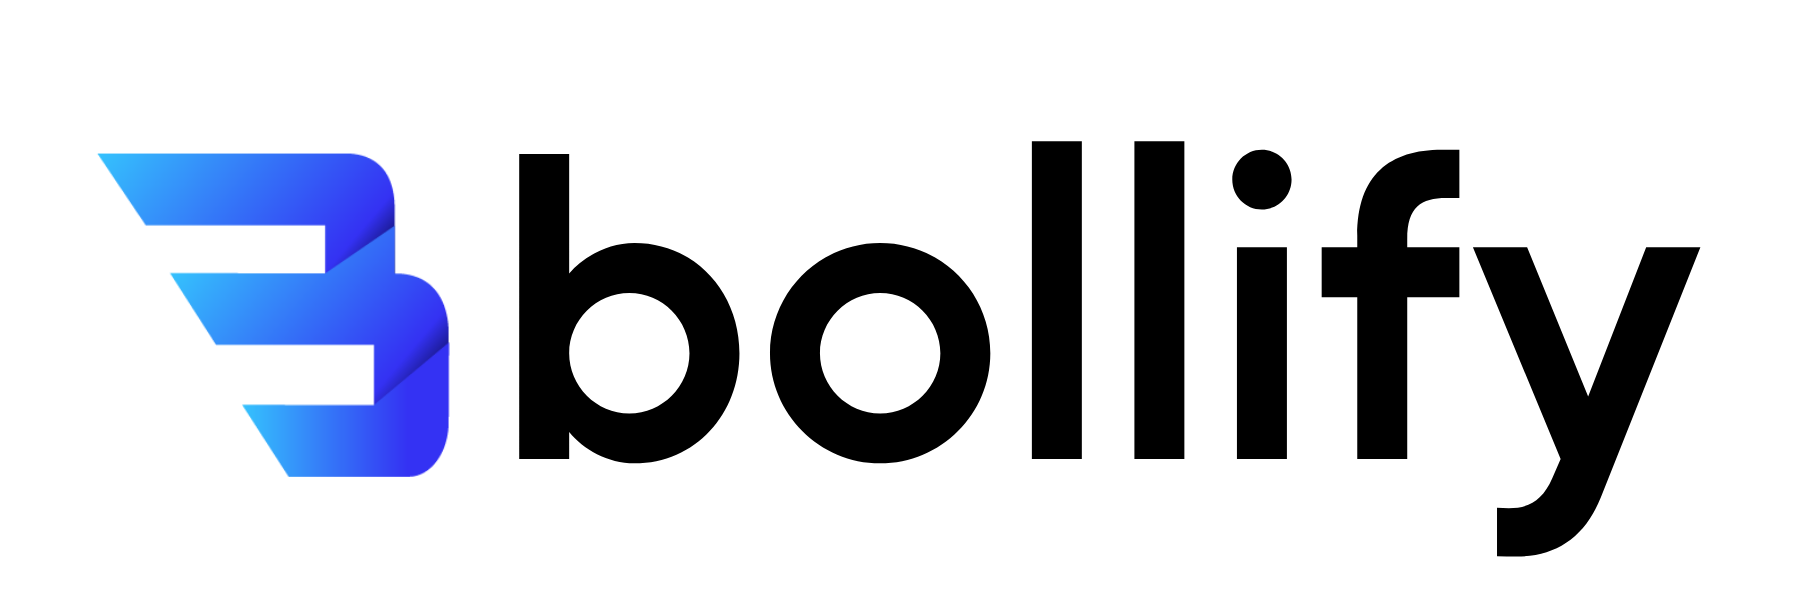 Bollify logo